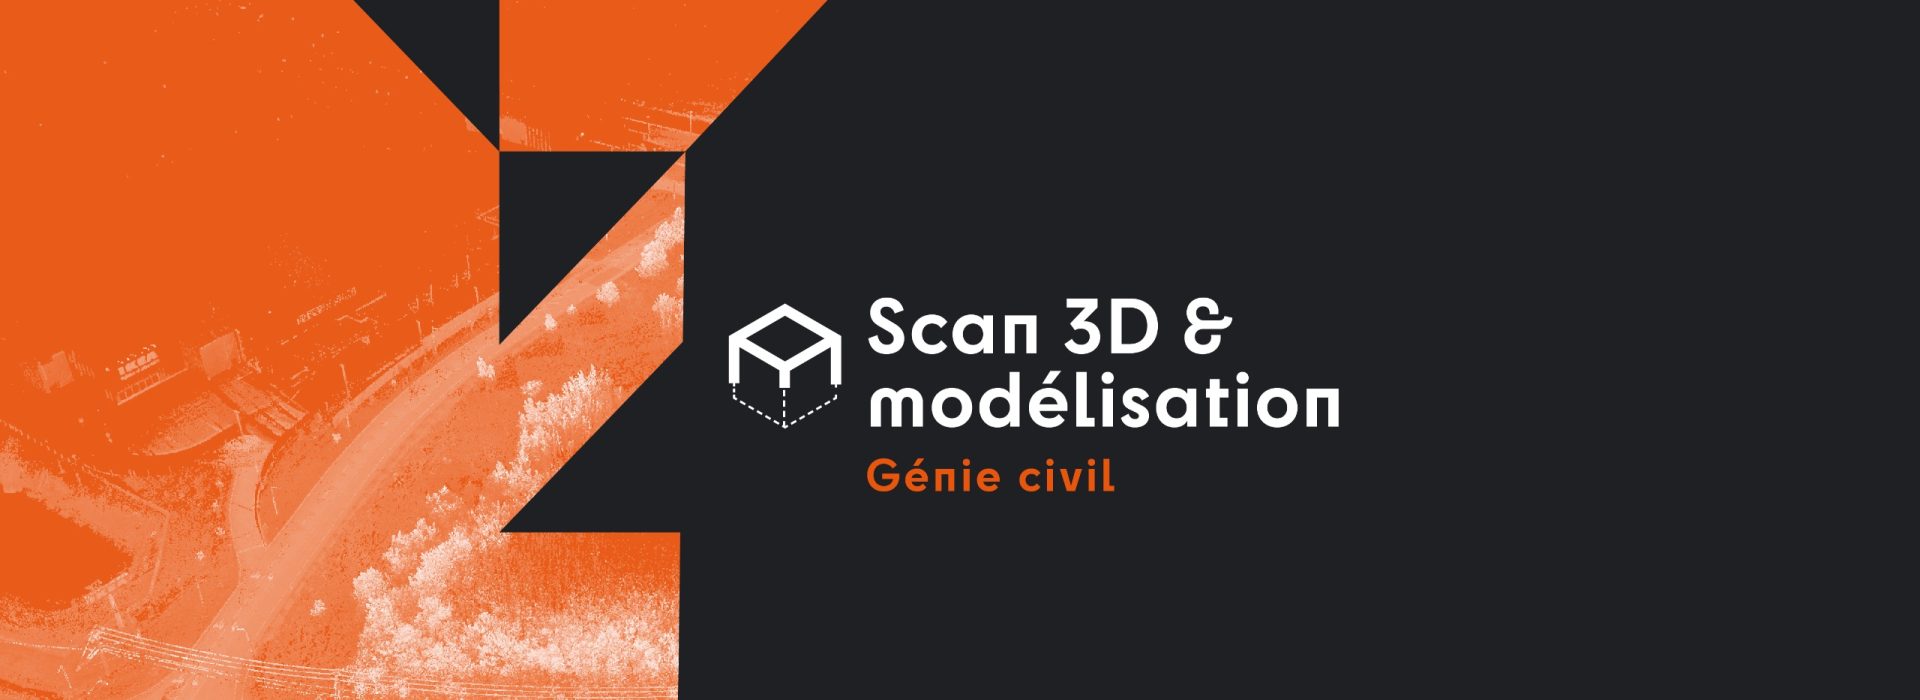 Scan 3D & modélisation - Génie civil